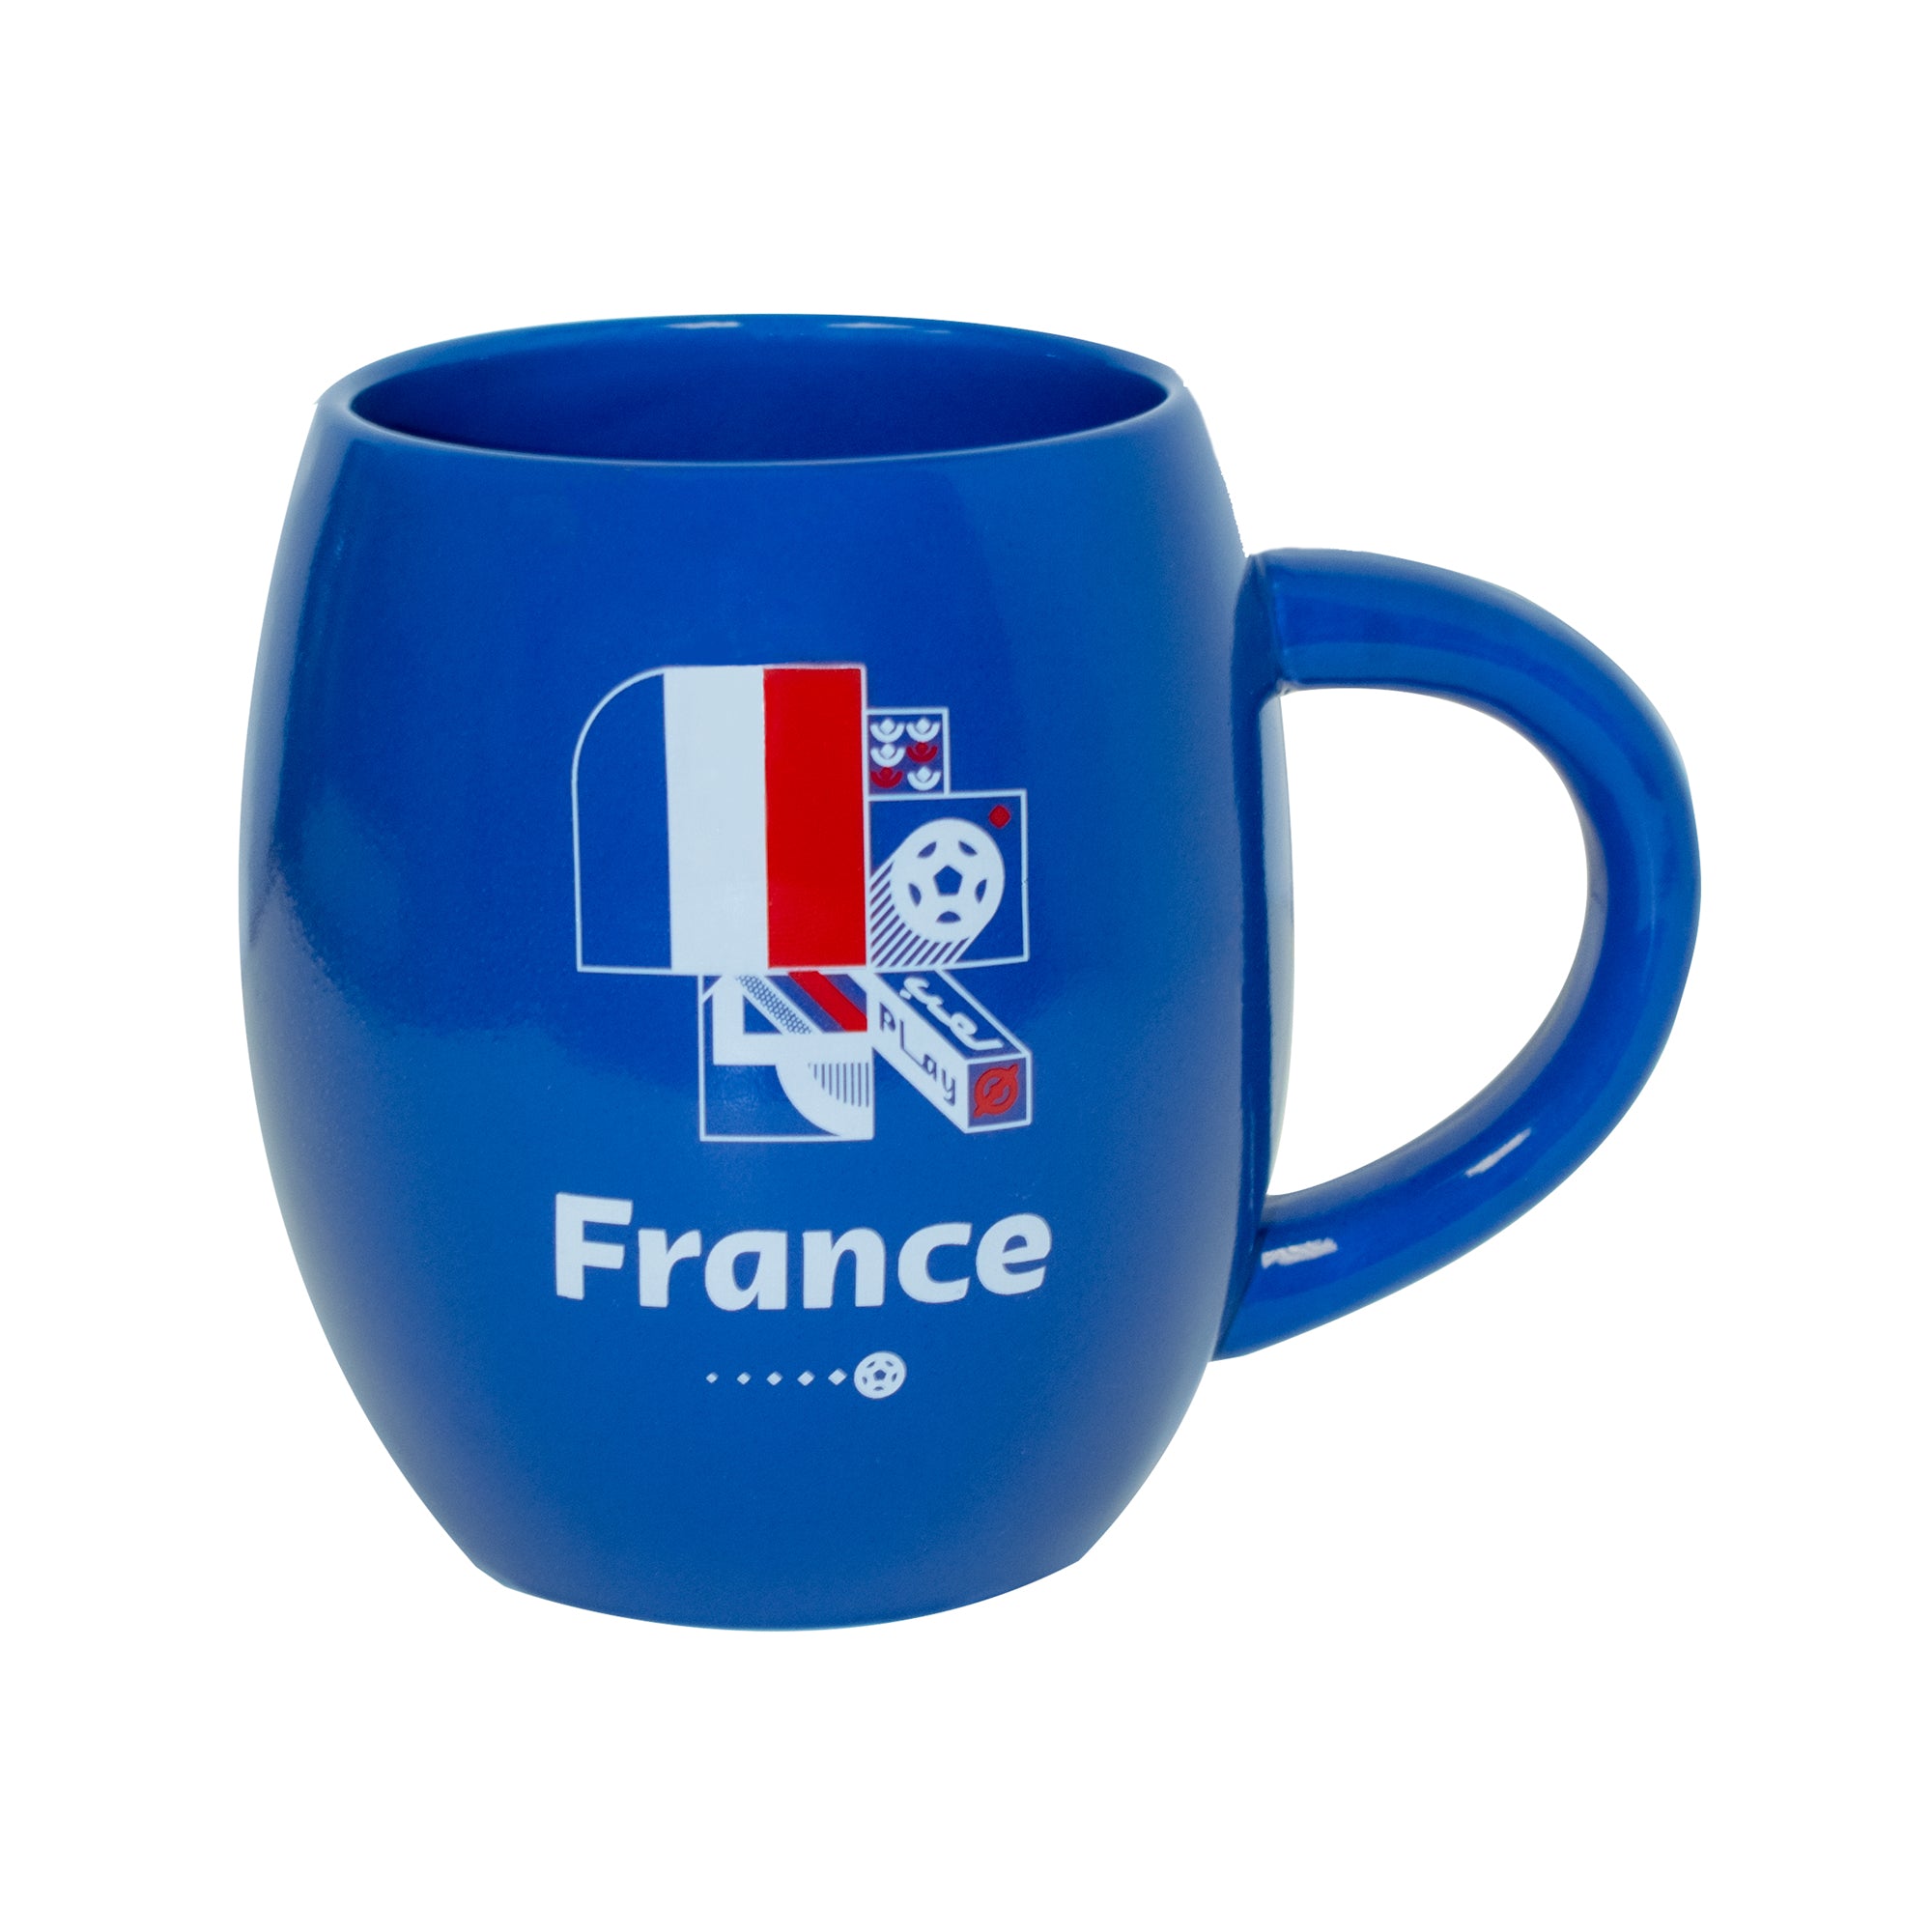 mug-france-front-worldcup-productimage.jpg